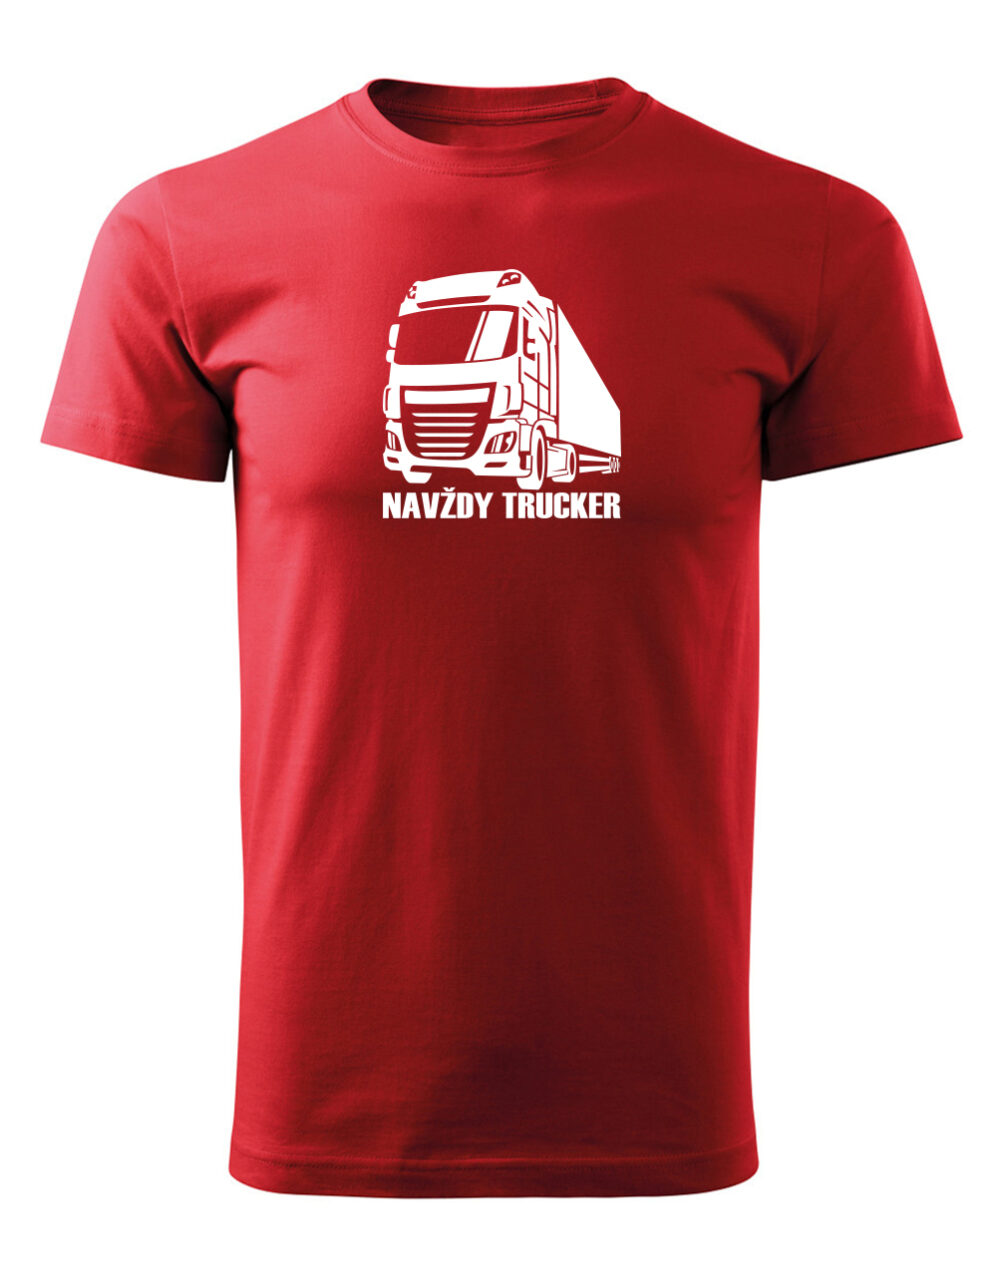 Pánské tričko s potiskem Navždy trucker červená